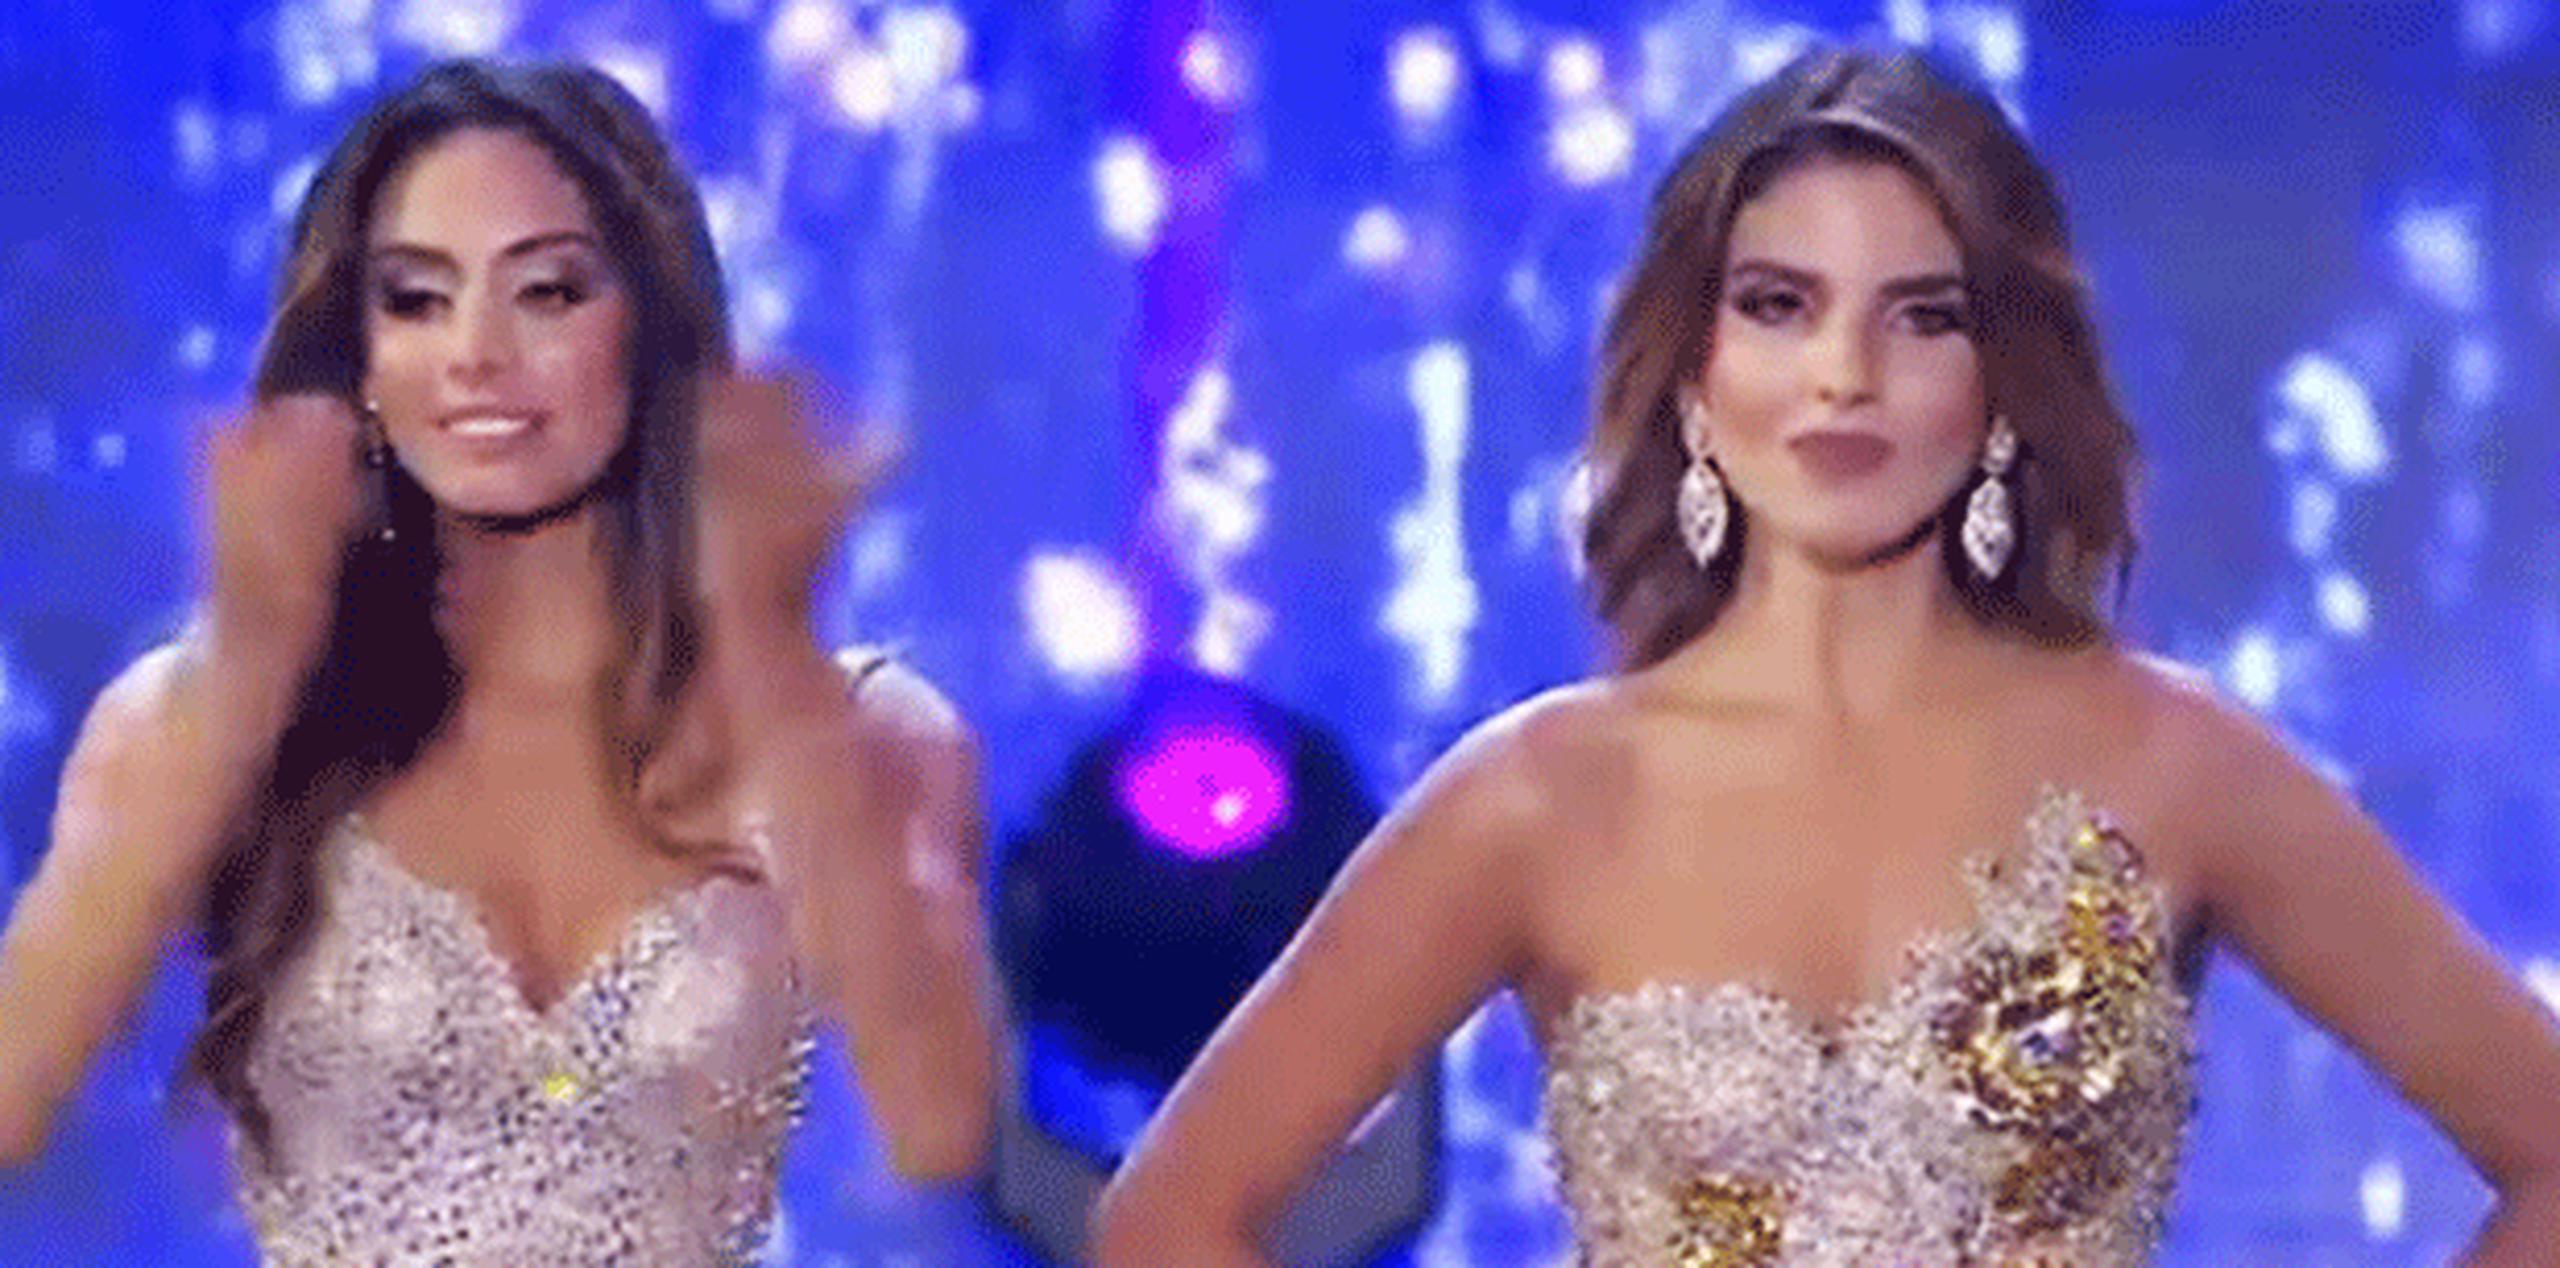 La última reina que ha acaparado la atención de las redes sociales es Miss Bogotá, Vanessa Domínguez, a la derecha. (Captura / YouTube)